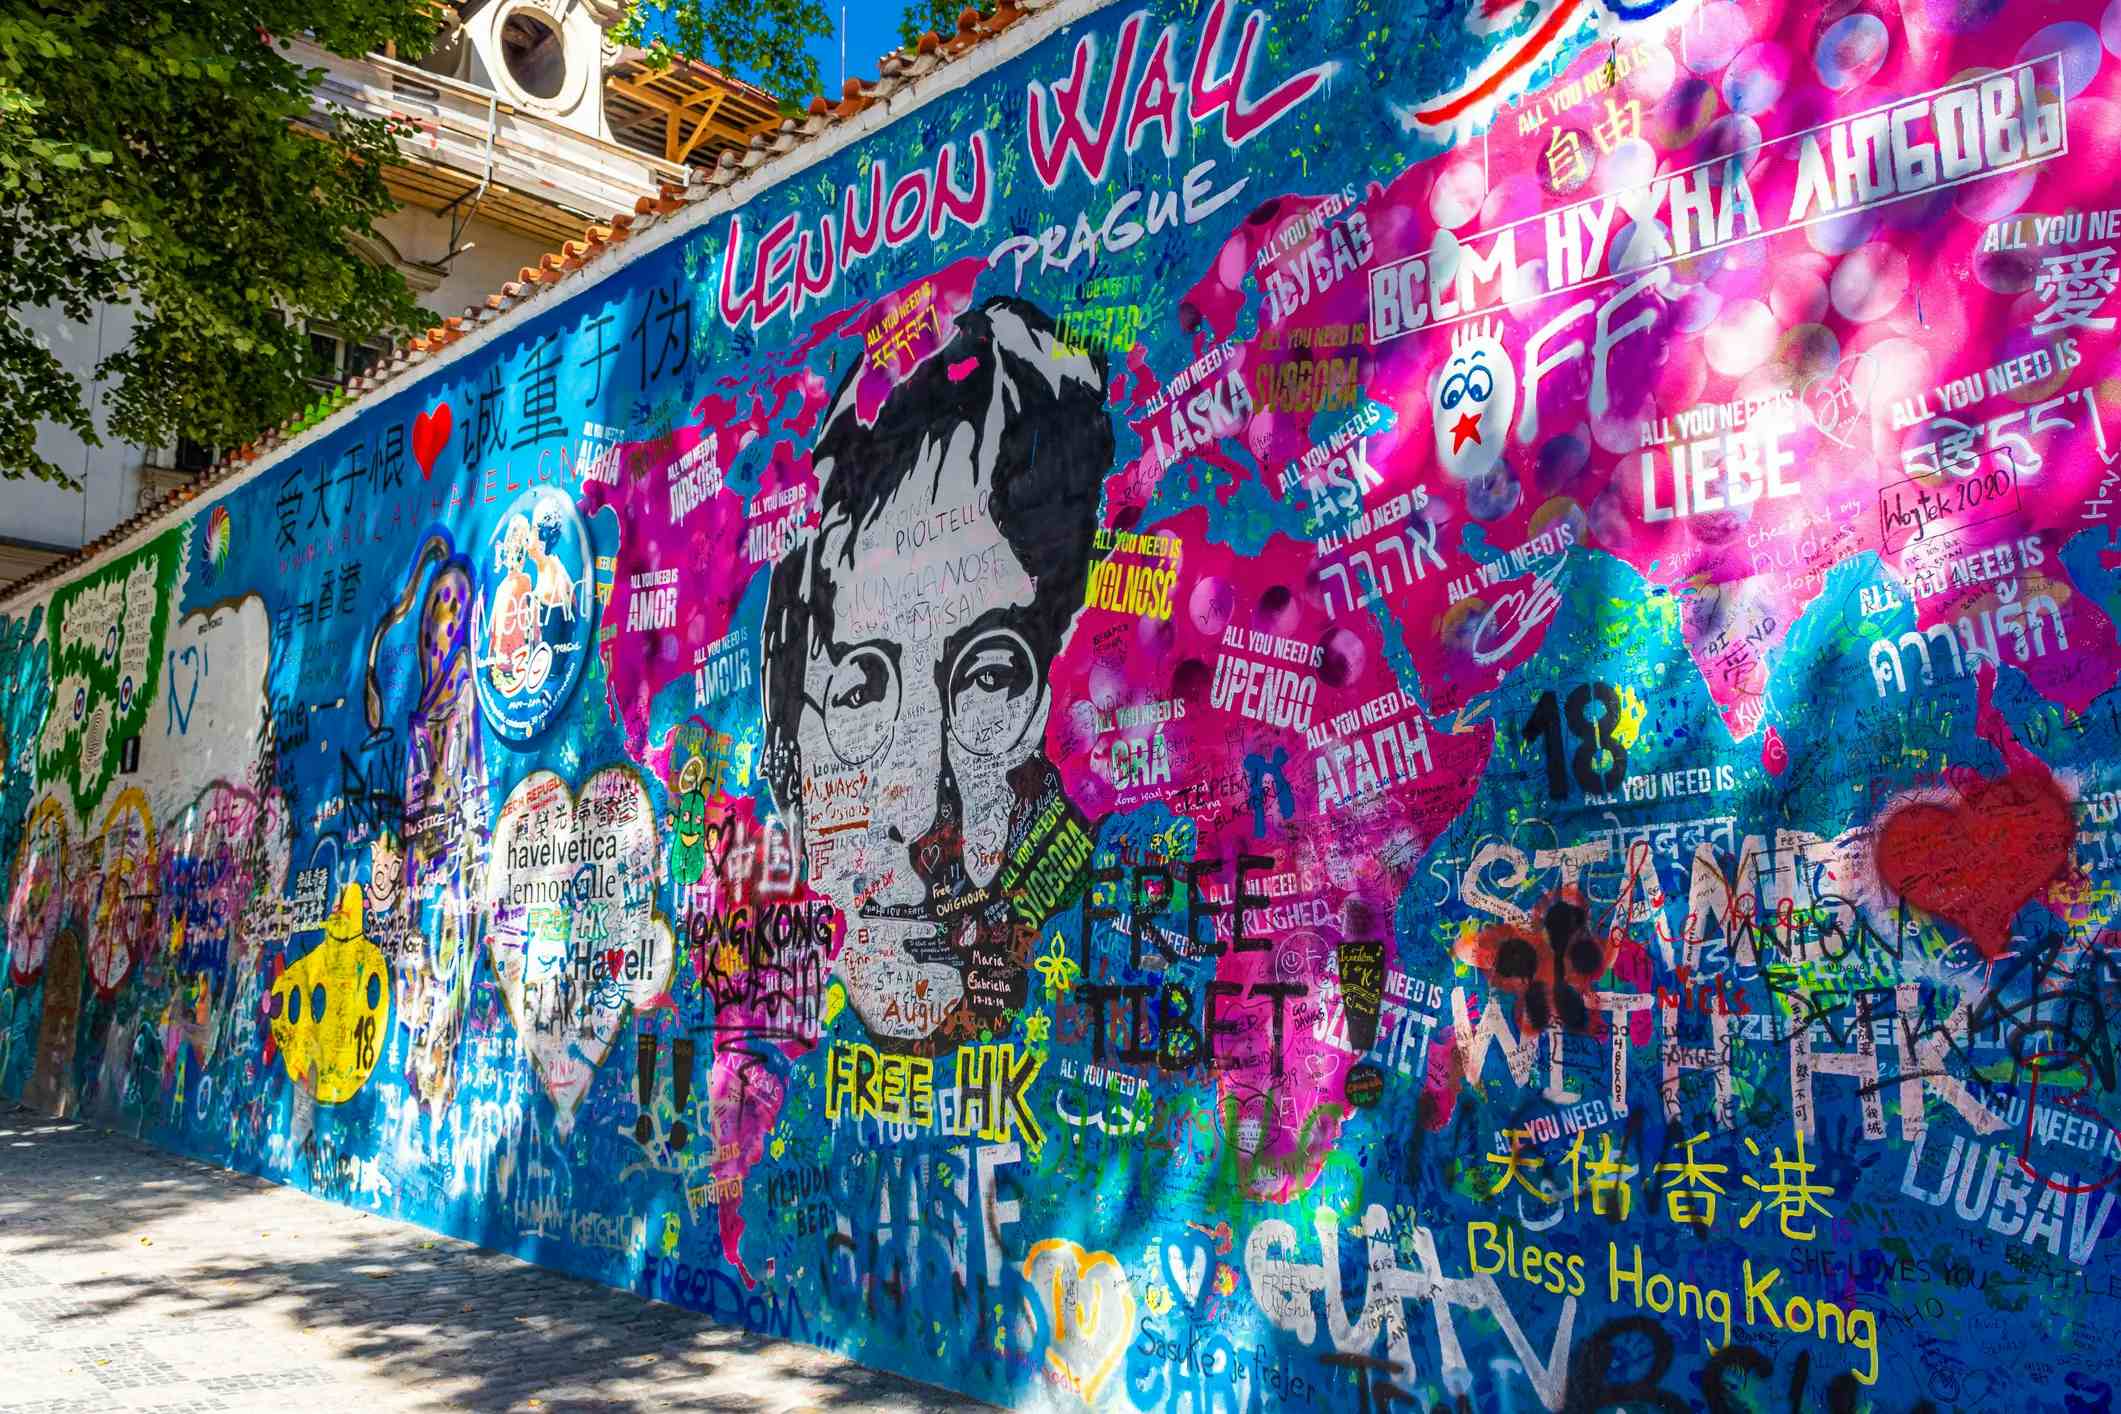 Lennon Wall image